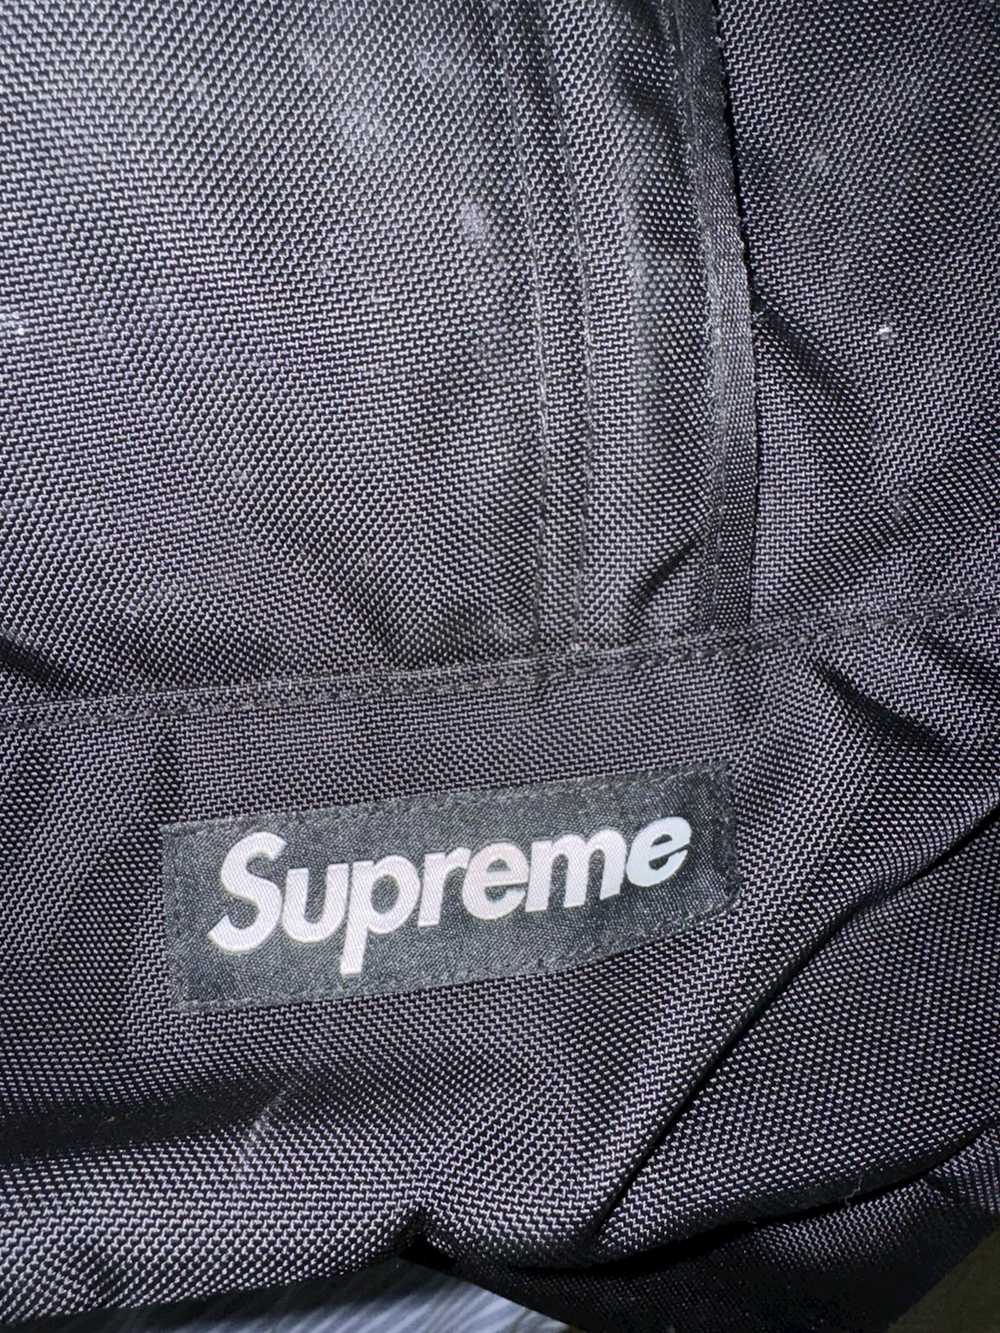 Supreme Supreme backpack (SS18) - image 7